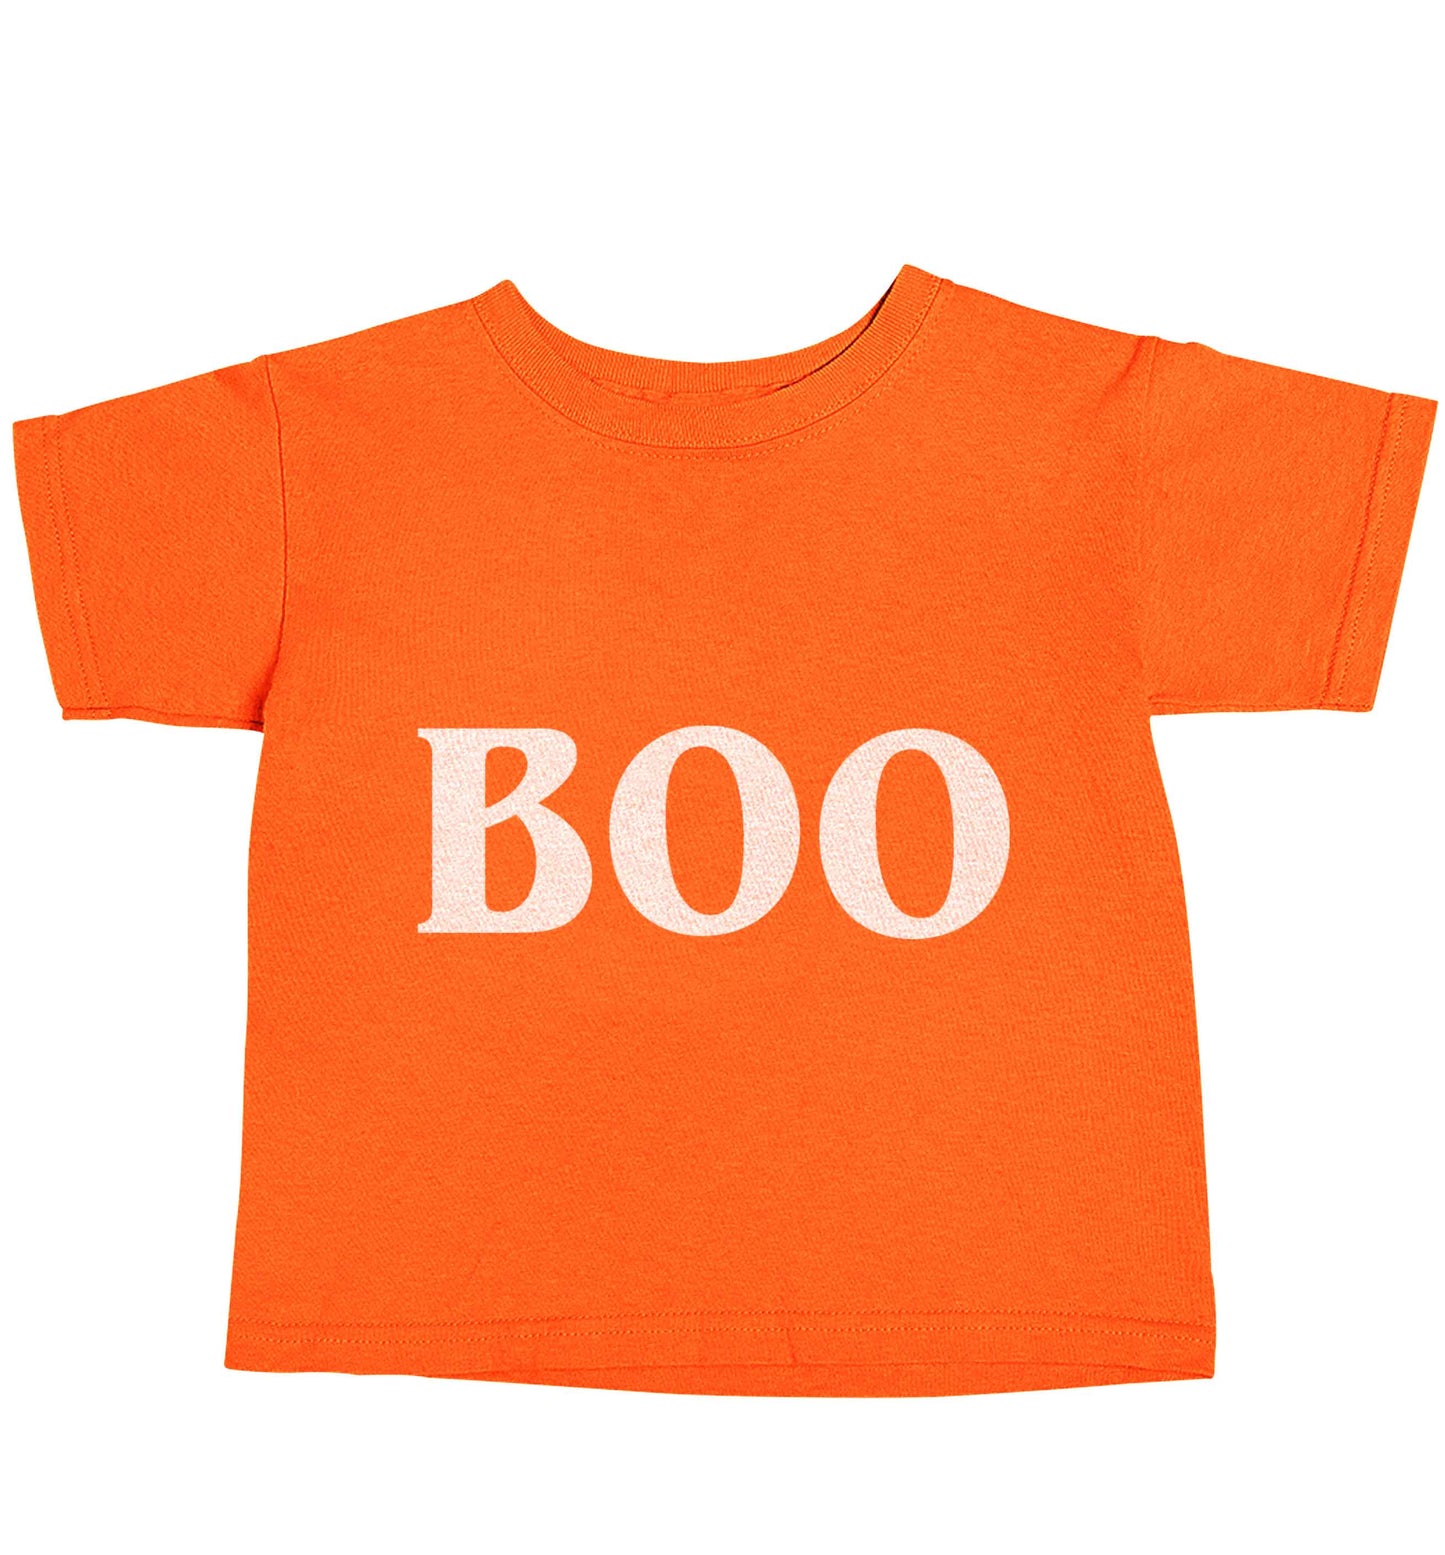 Boo orange baby toddler Tshirt 2 Years